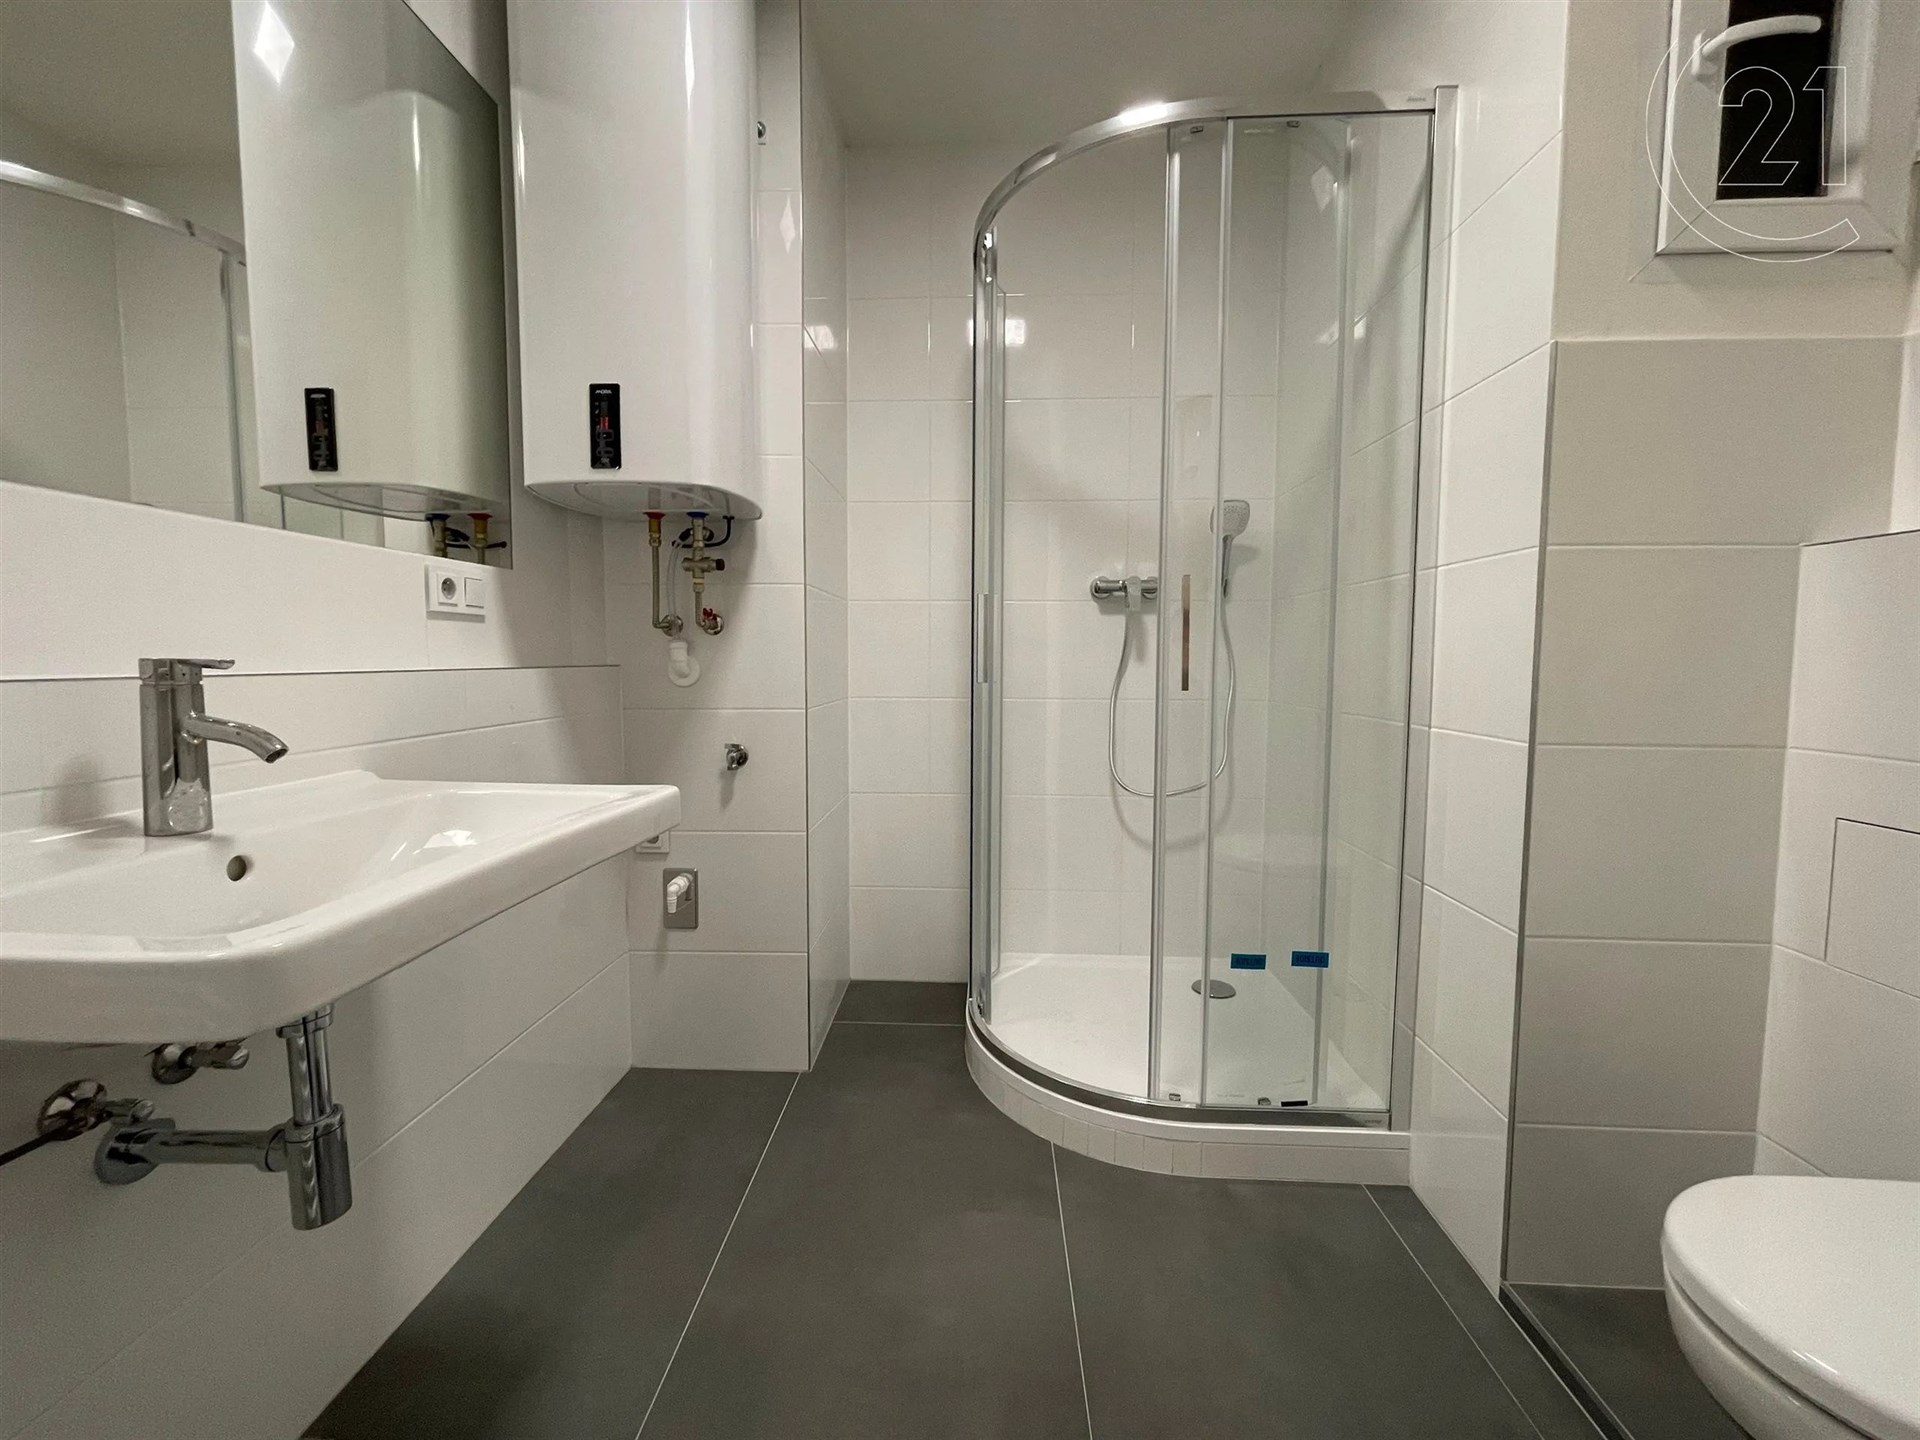 vana s stěna dlaždic, kachličková podlaha, sprcha, ohřívač vody, a zrcadlo